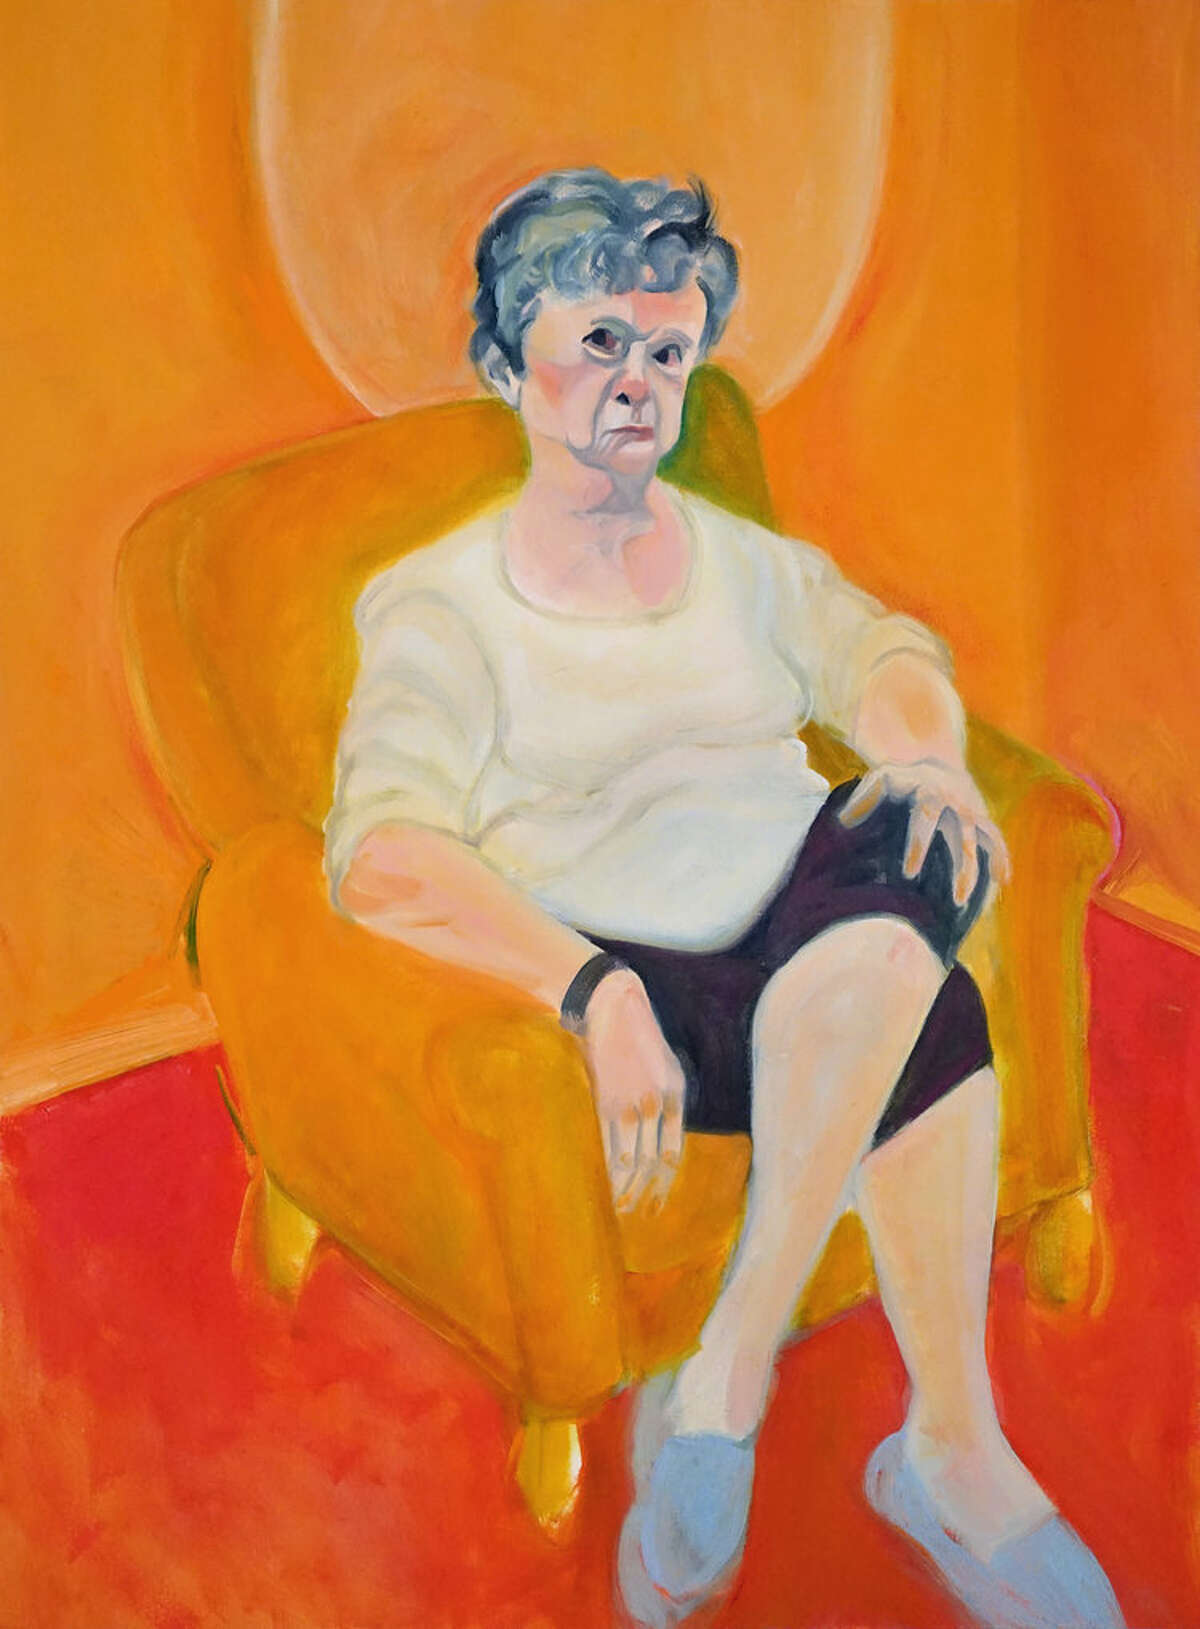 Kathy Drago's figurative painting "I Am So UPSET!" also won.